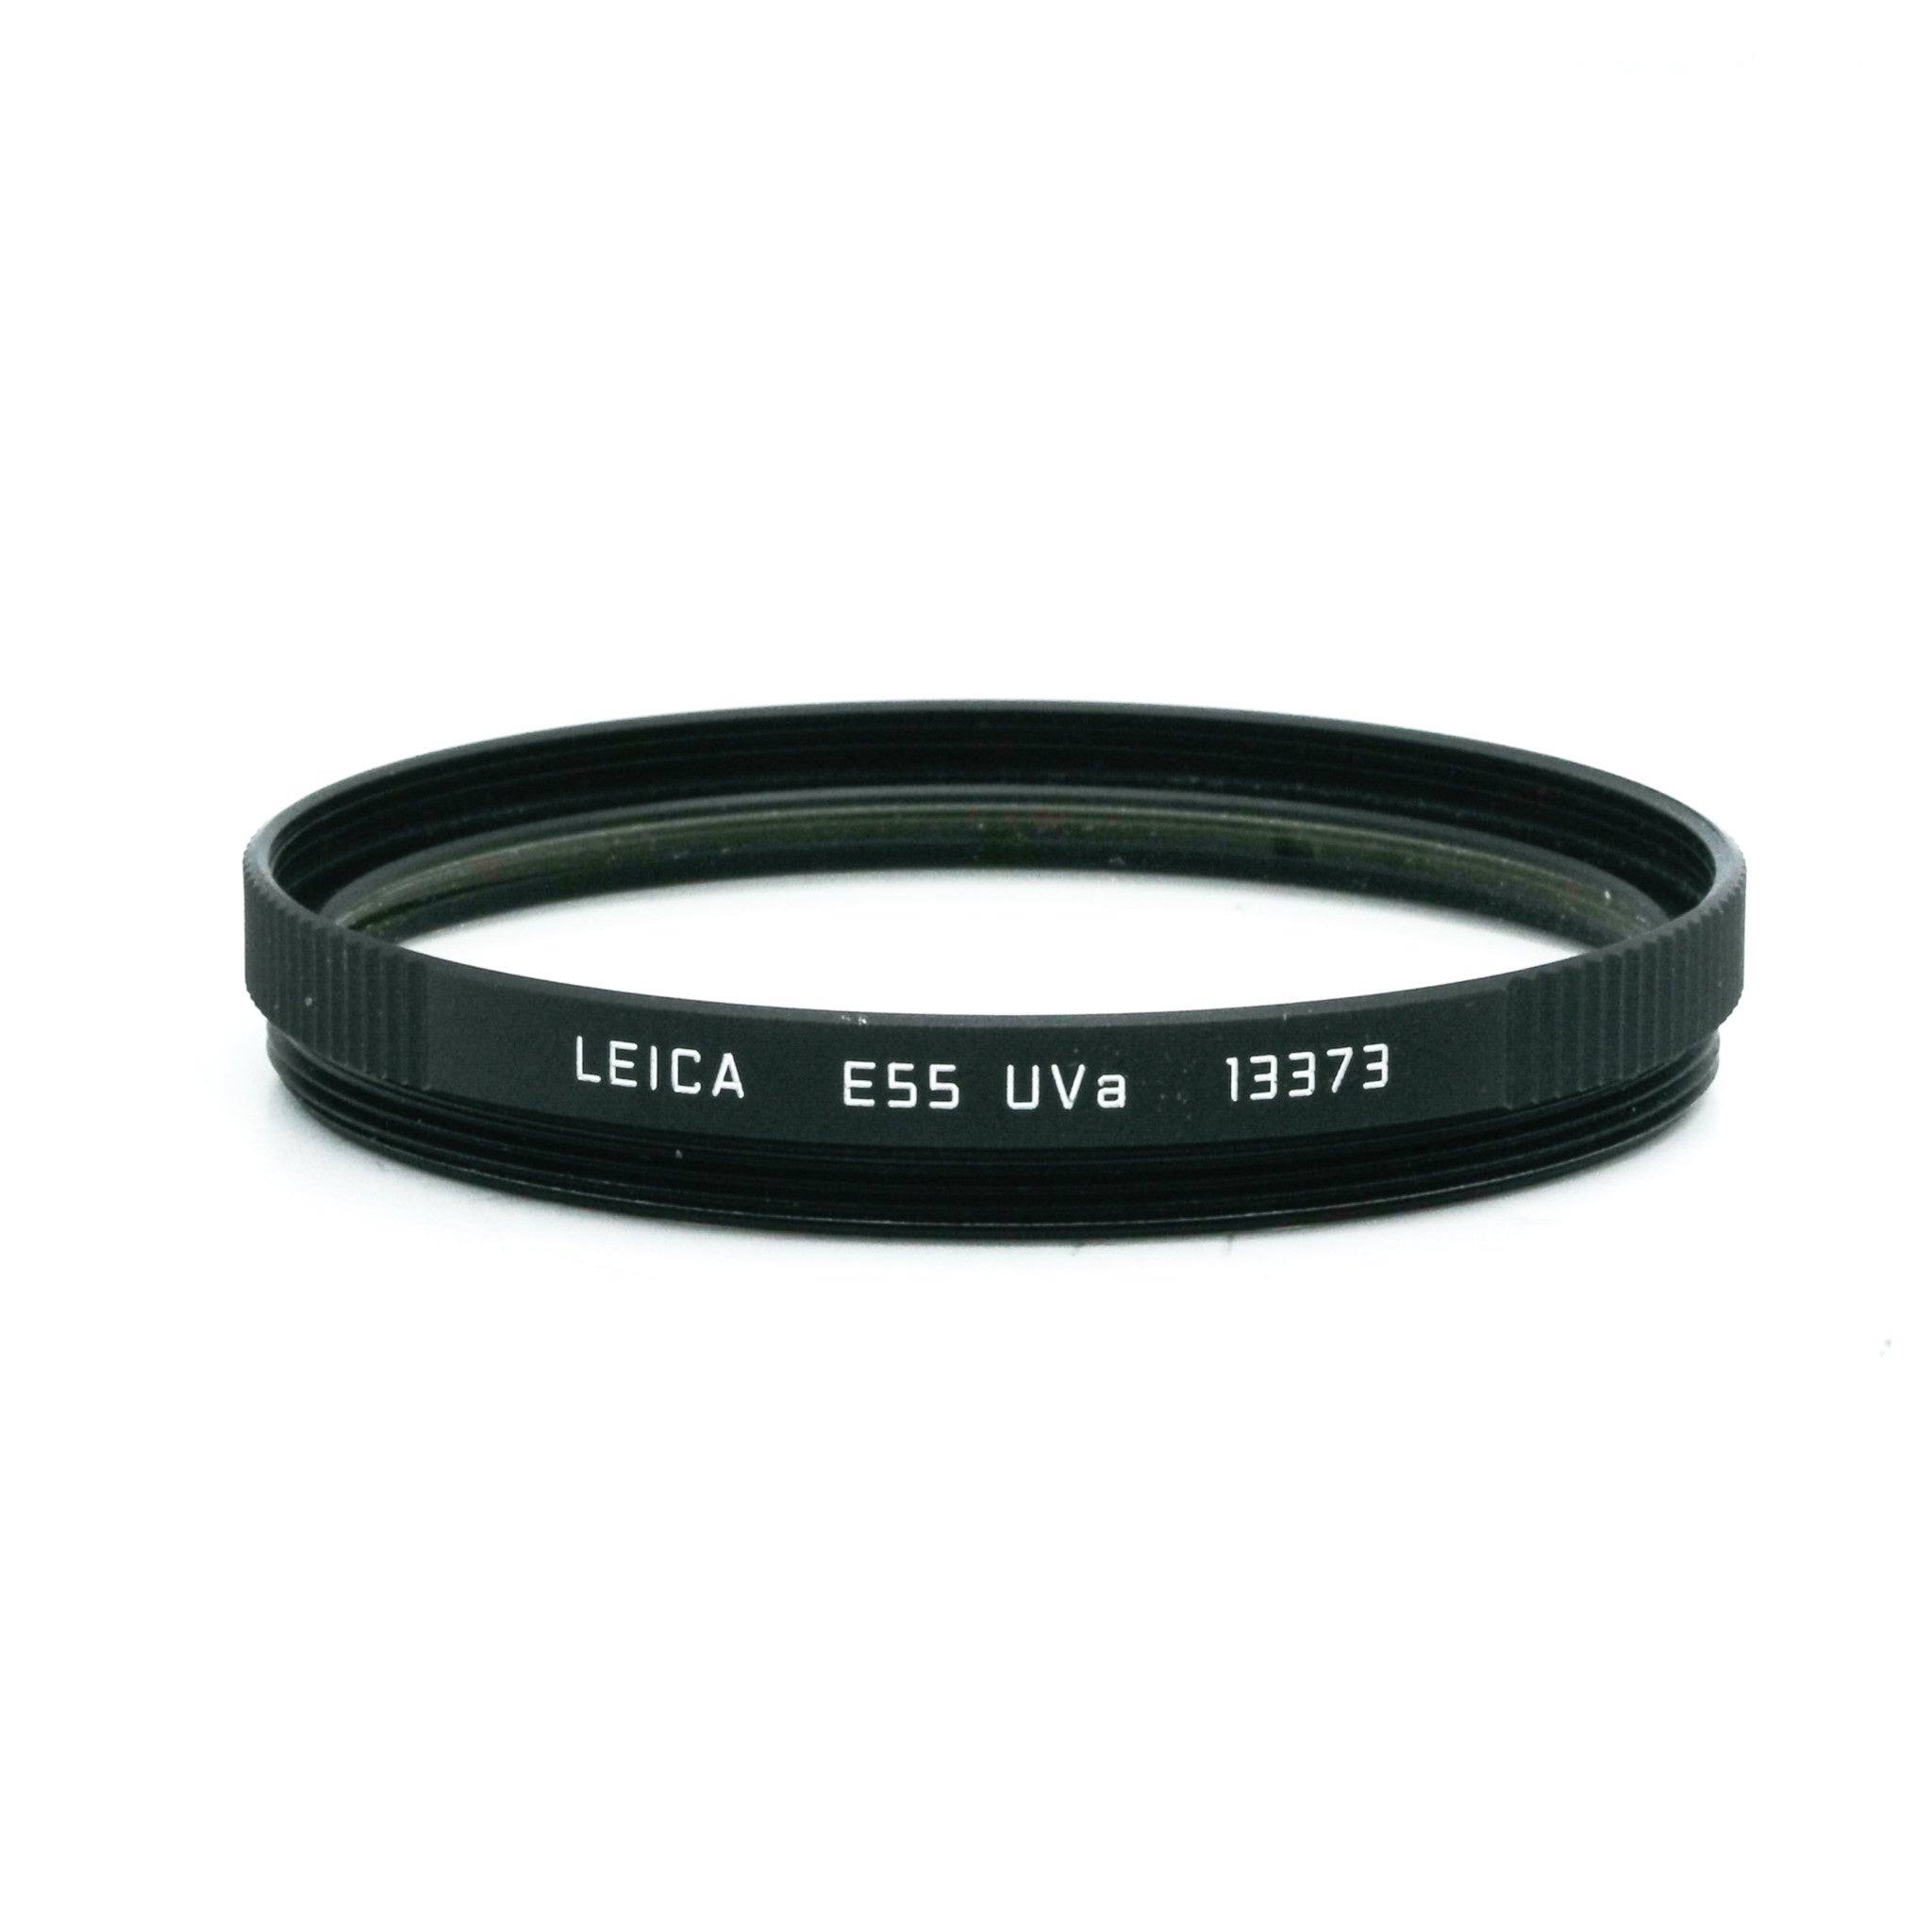 Leica E55 UVa, Black